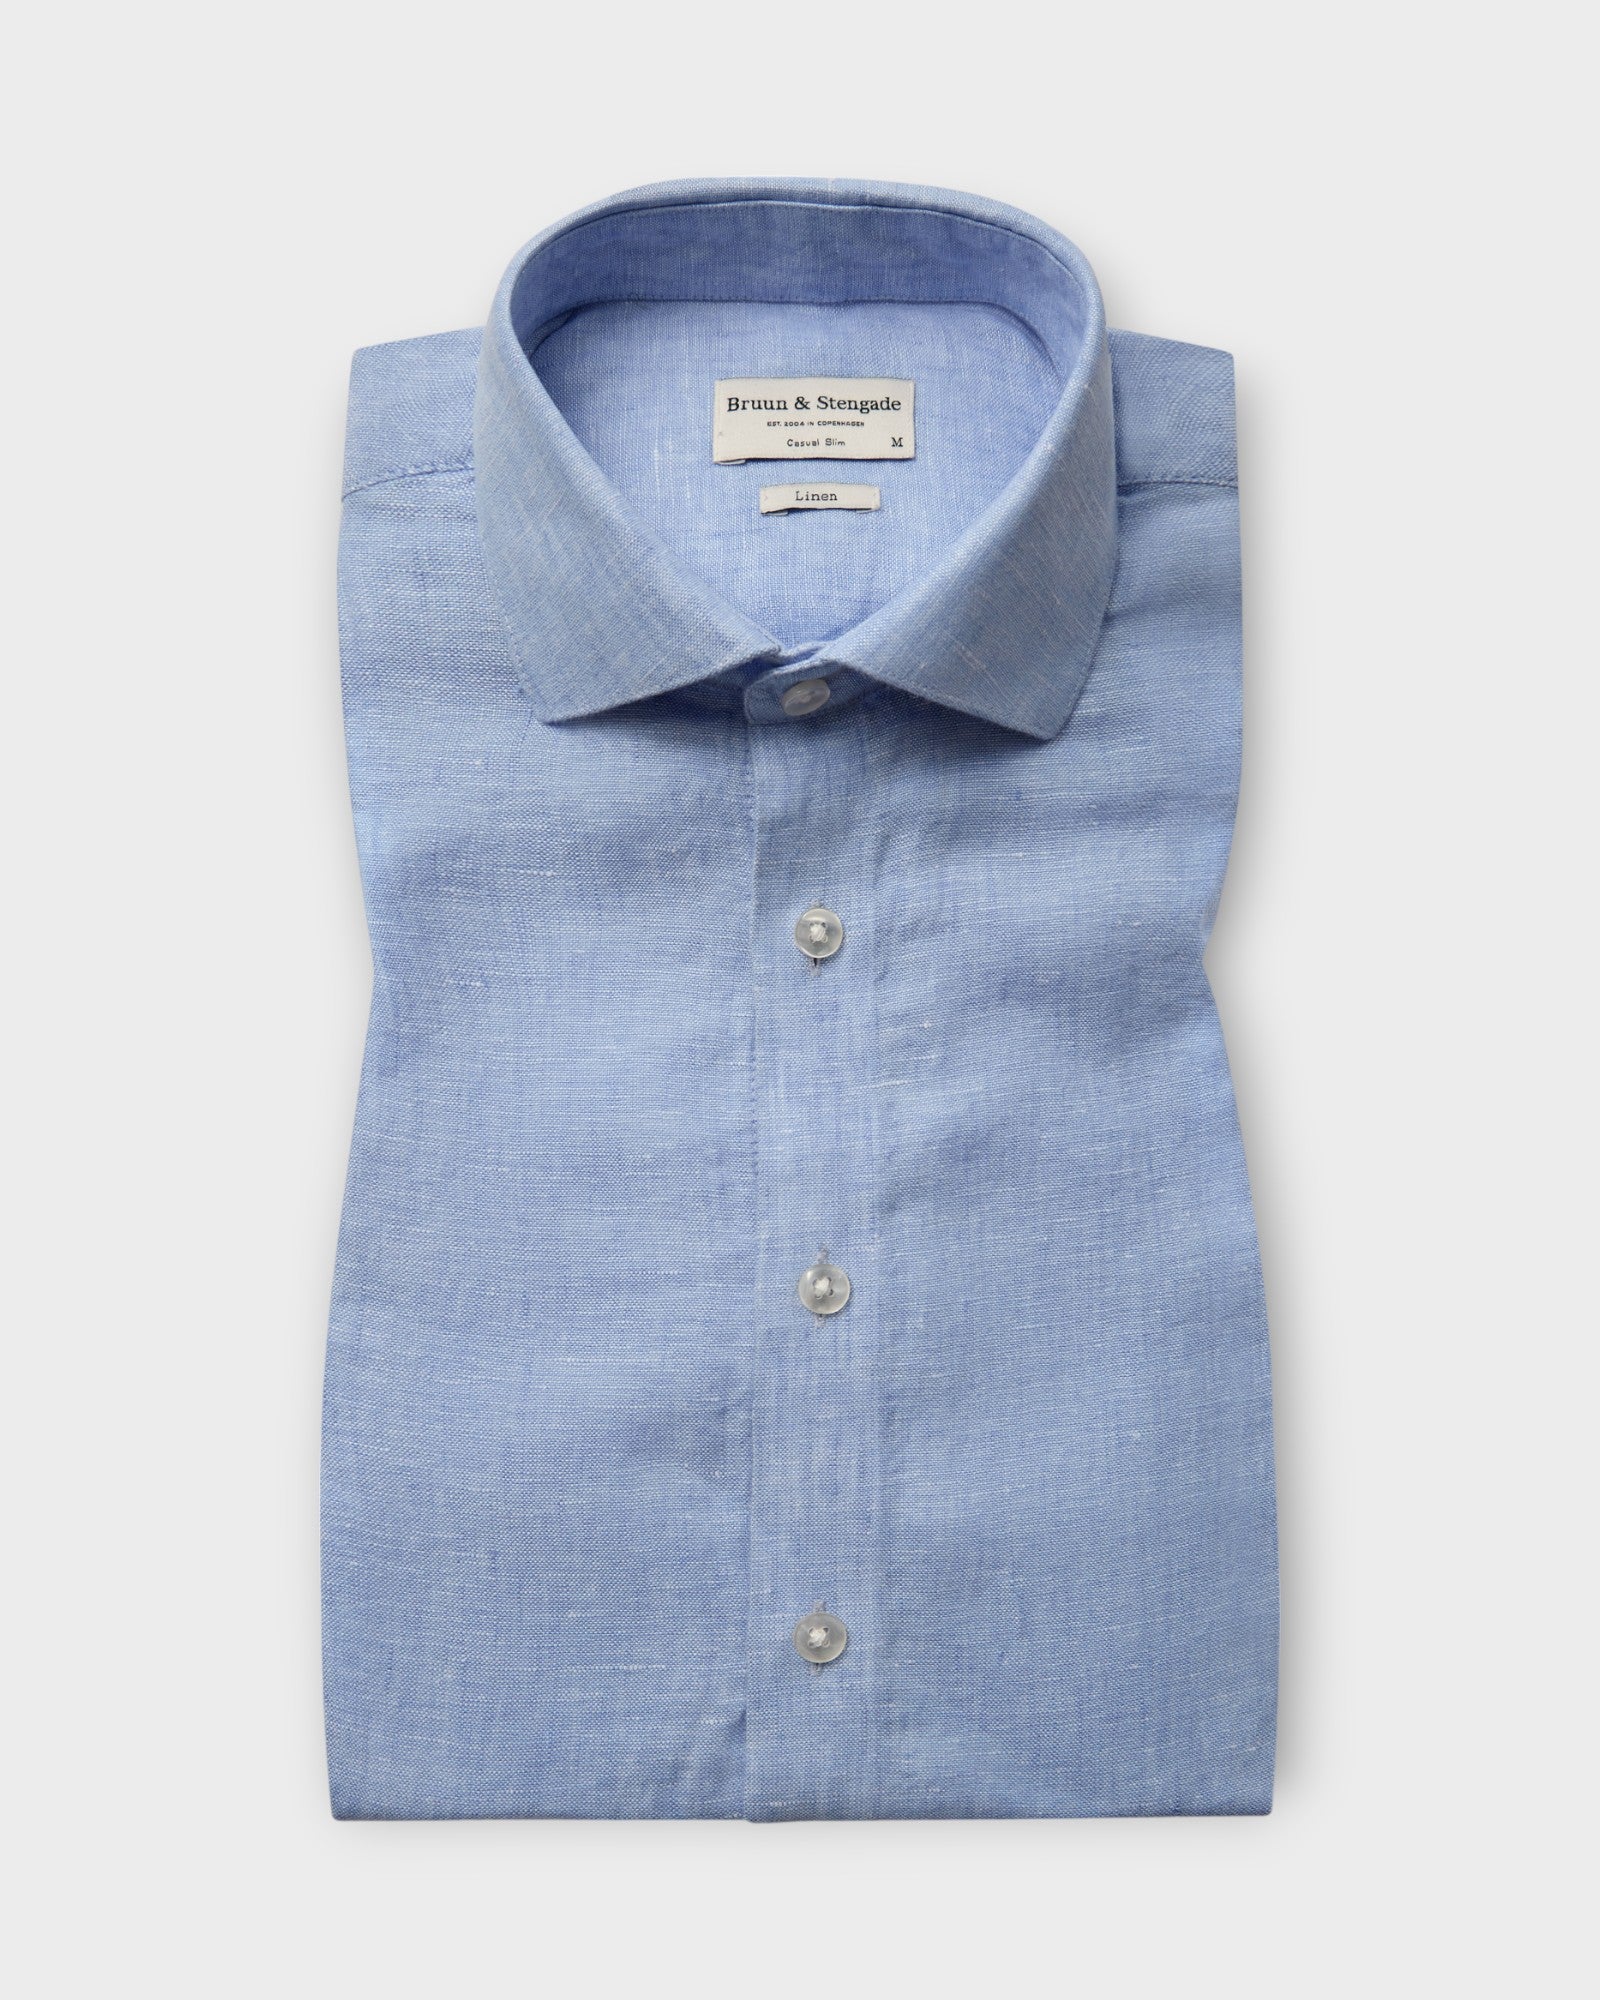 Perth Casual Slim Fit Shirt Light Blue, lyseblå hørskjorte fra Bruun og Stengade. Her set forfra.